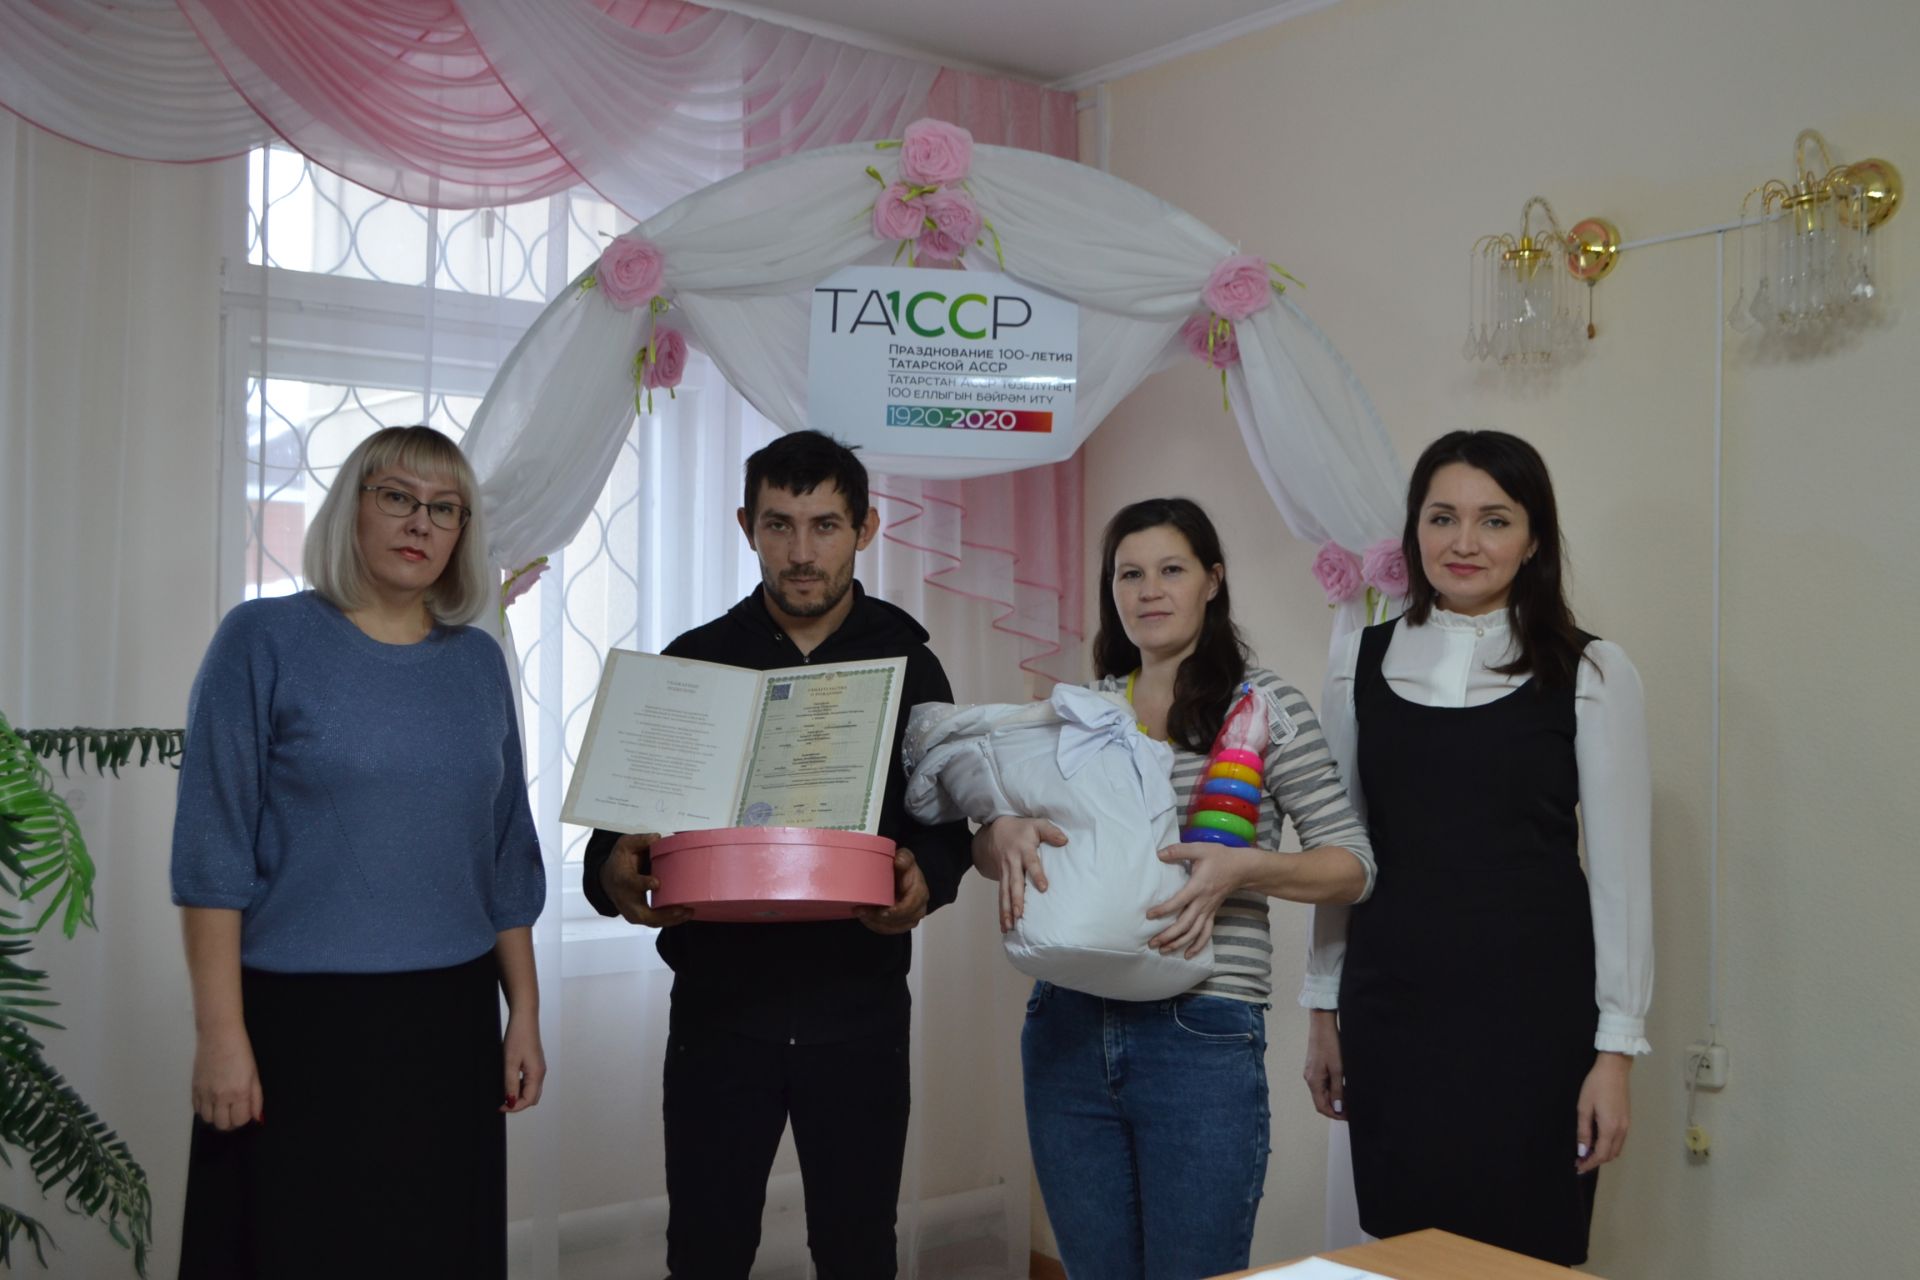 В Верхнеуслонском районе чествовали первого новорожденного, рожденного в год 100-летия ТАССР